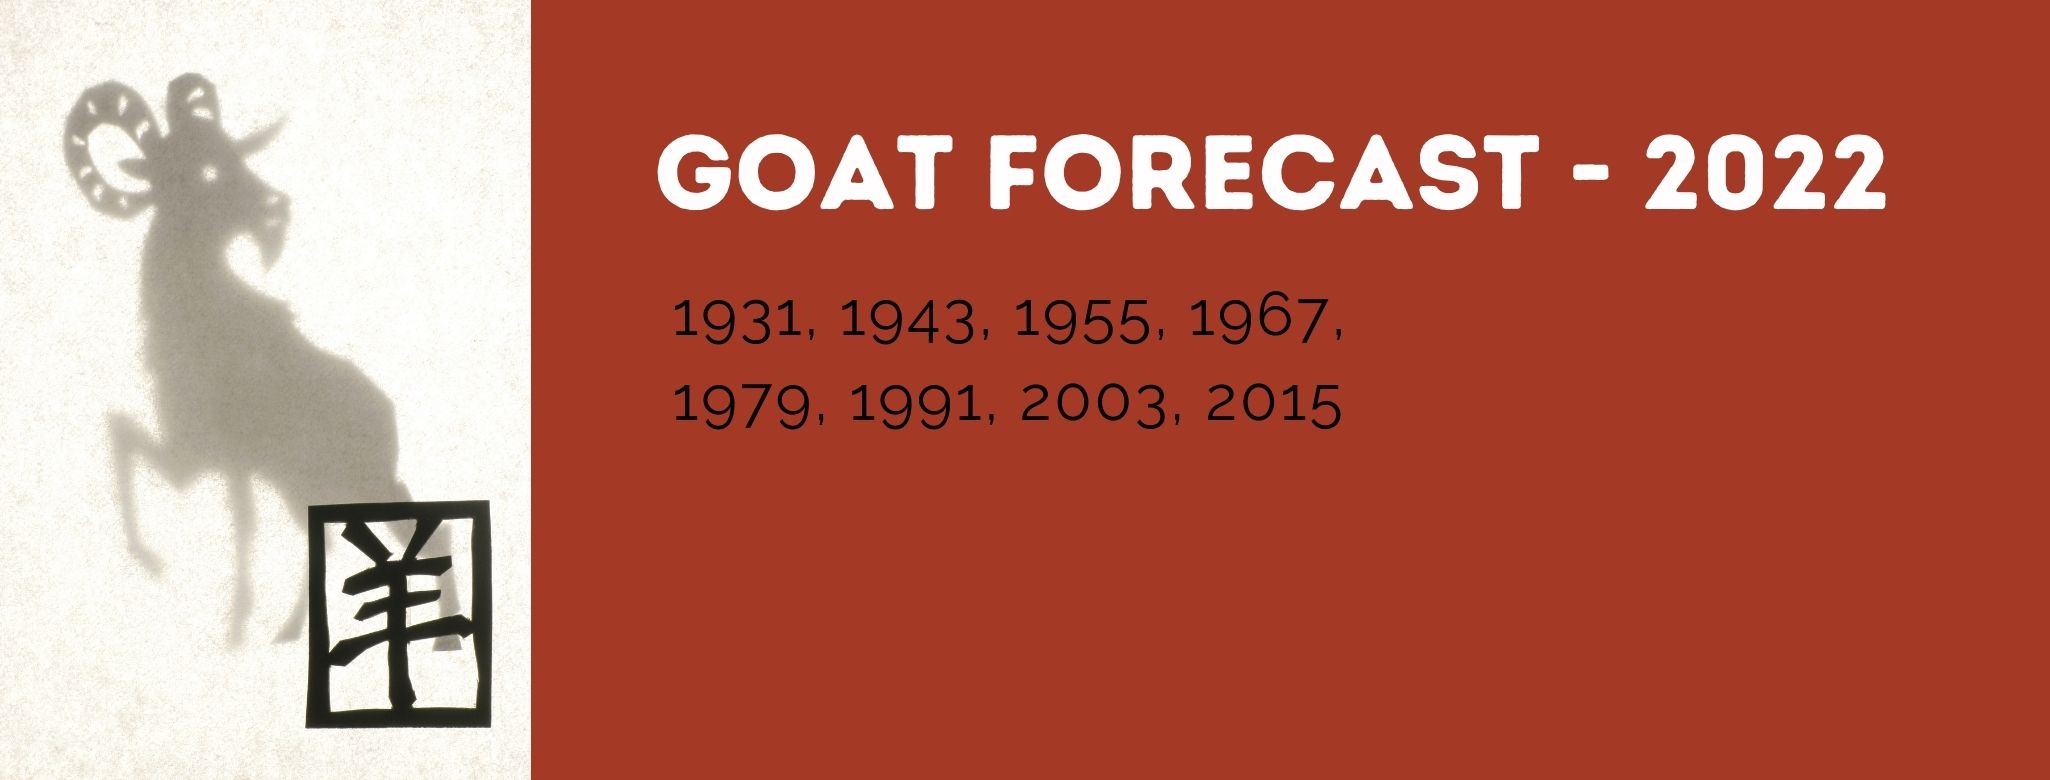 Goat Chinese Zodiac Forecast - 2022